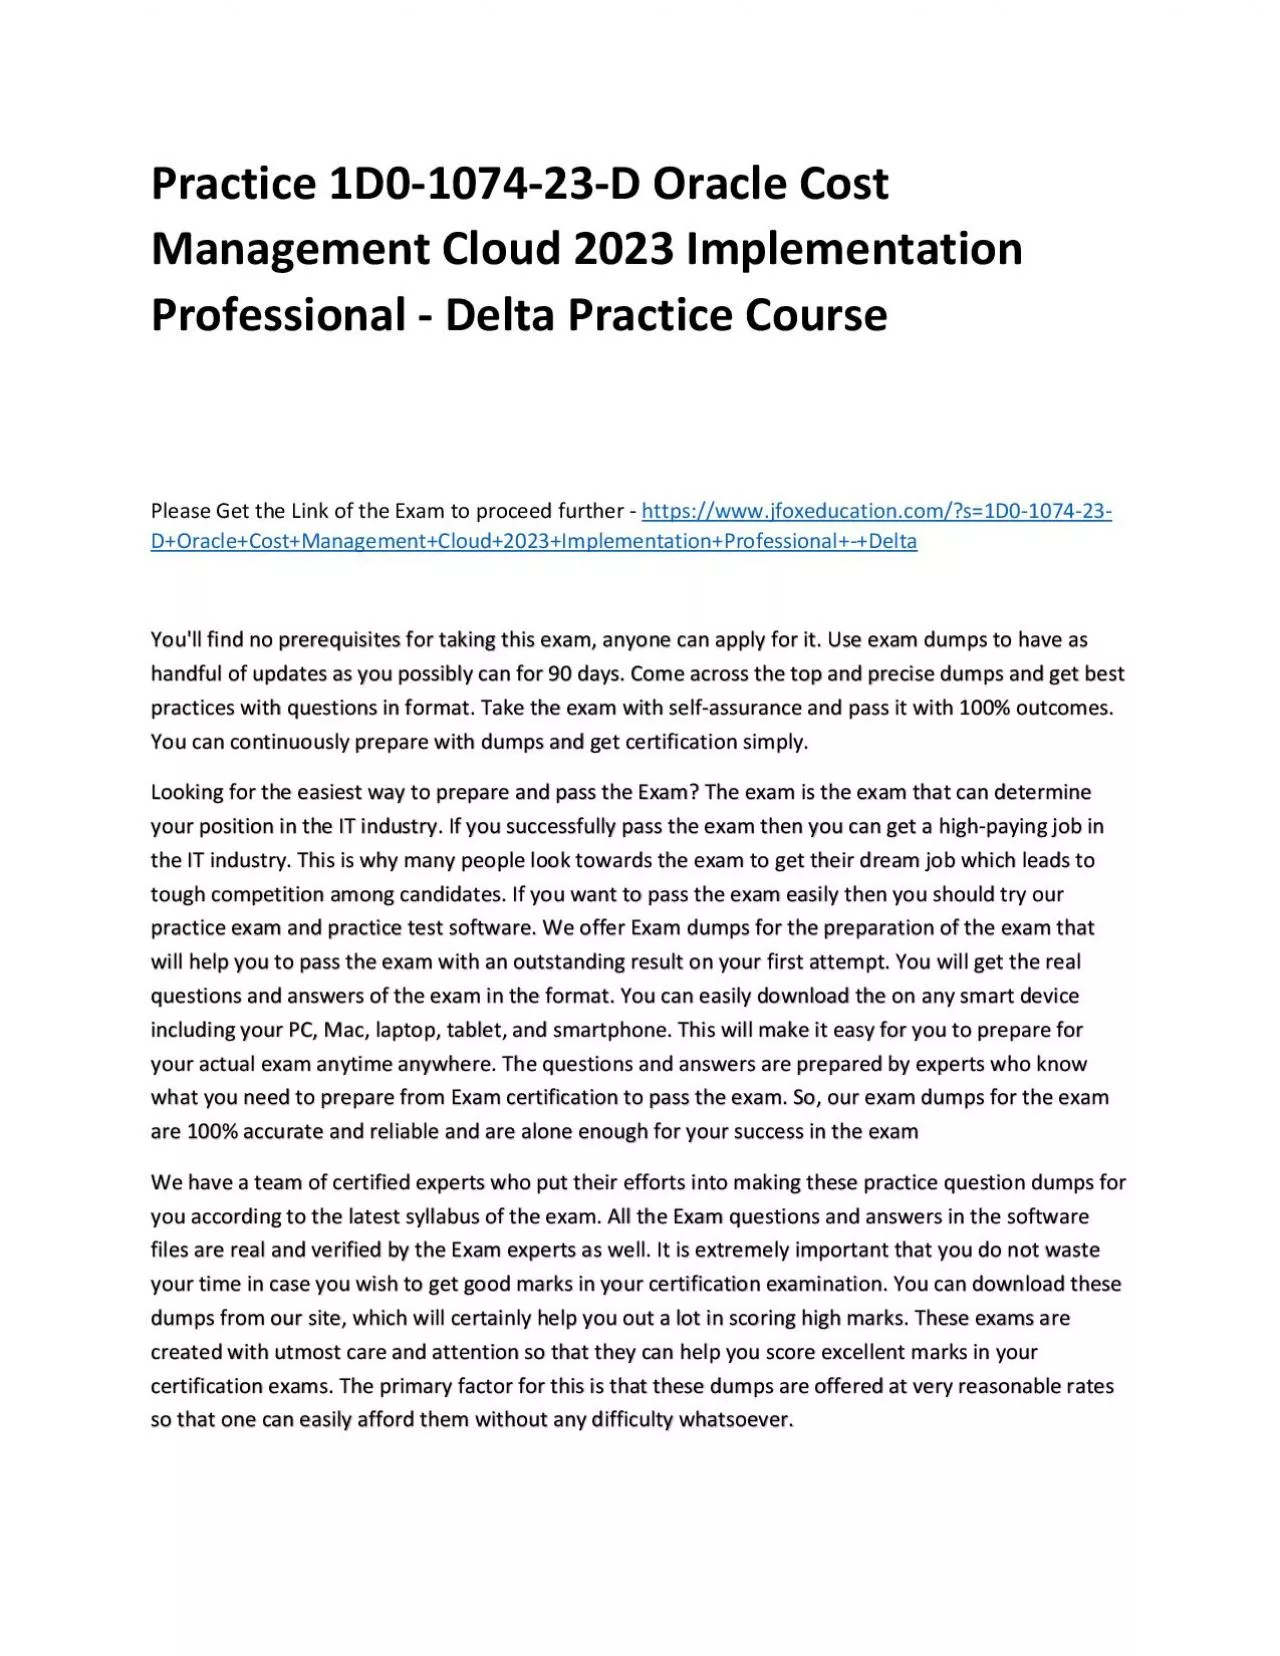 Practice 1D0-1074-23-D Oracle Cost Management Cloud 2023 Implementation Professional -